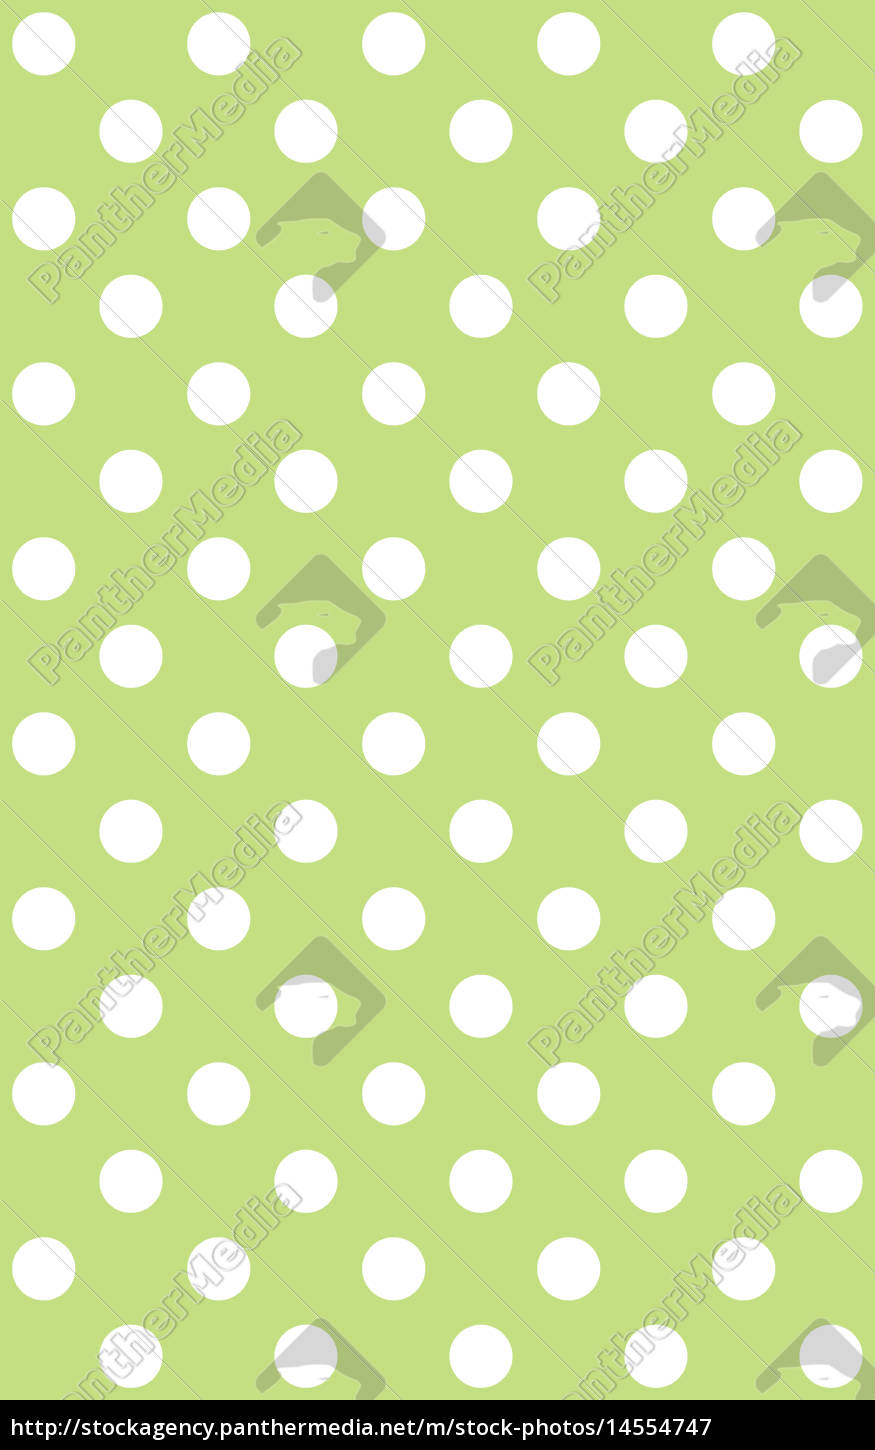 Hellgrüner Hintergrund mit weißen Punkten - Lizenzfreies Bild